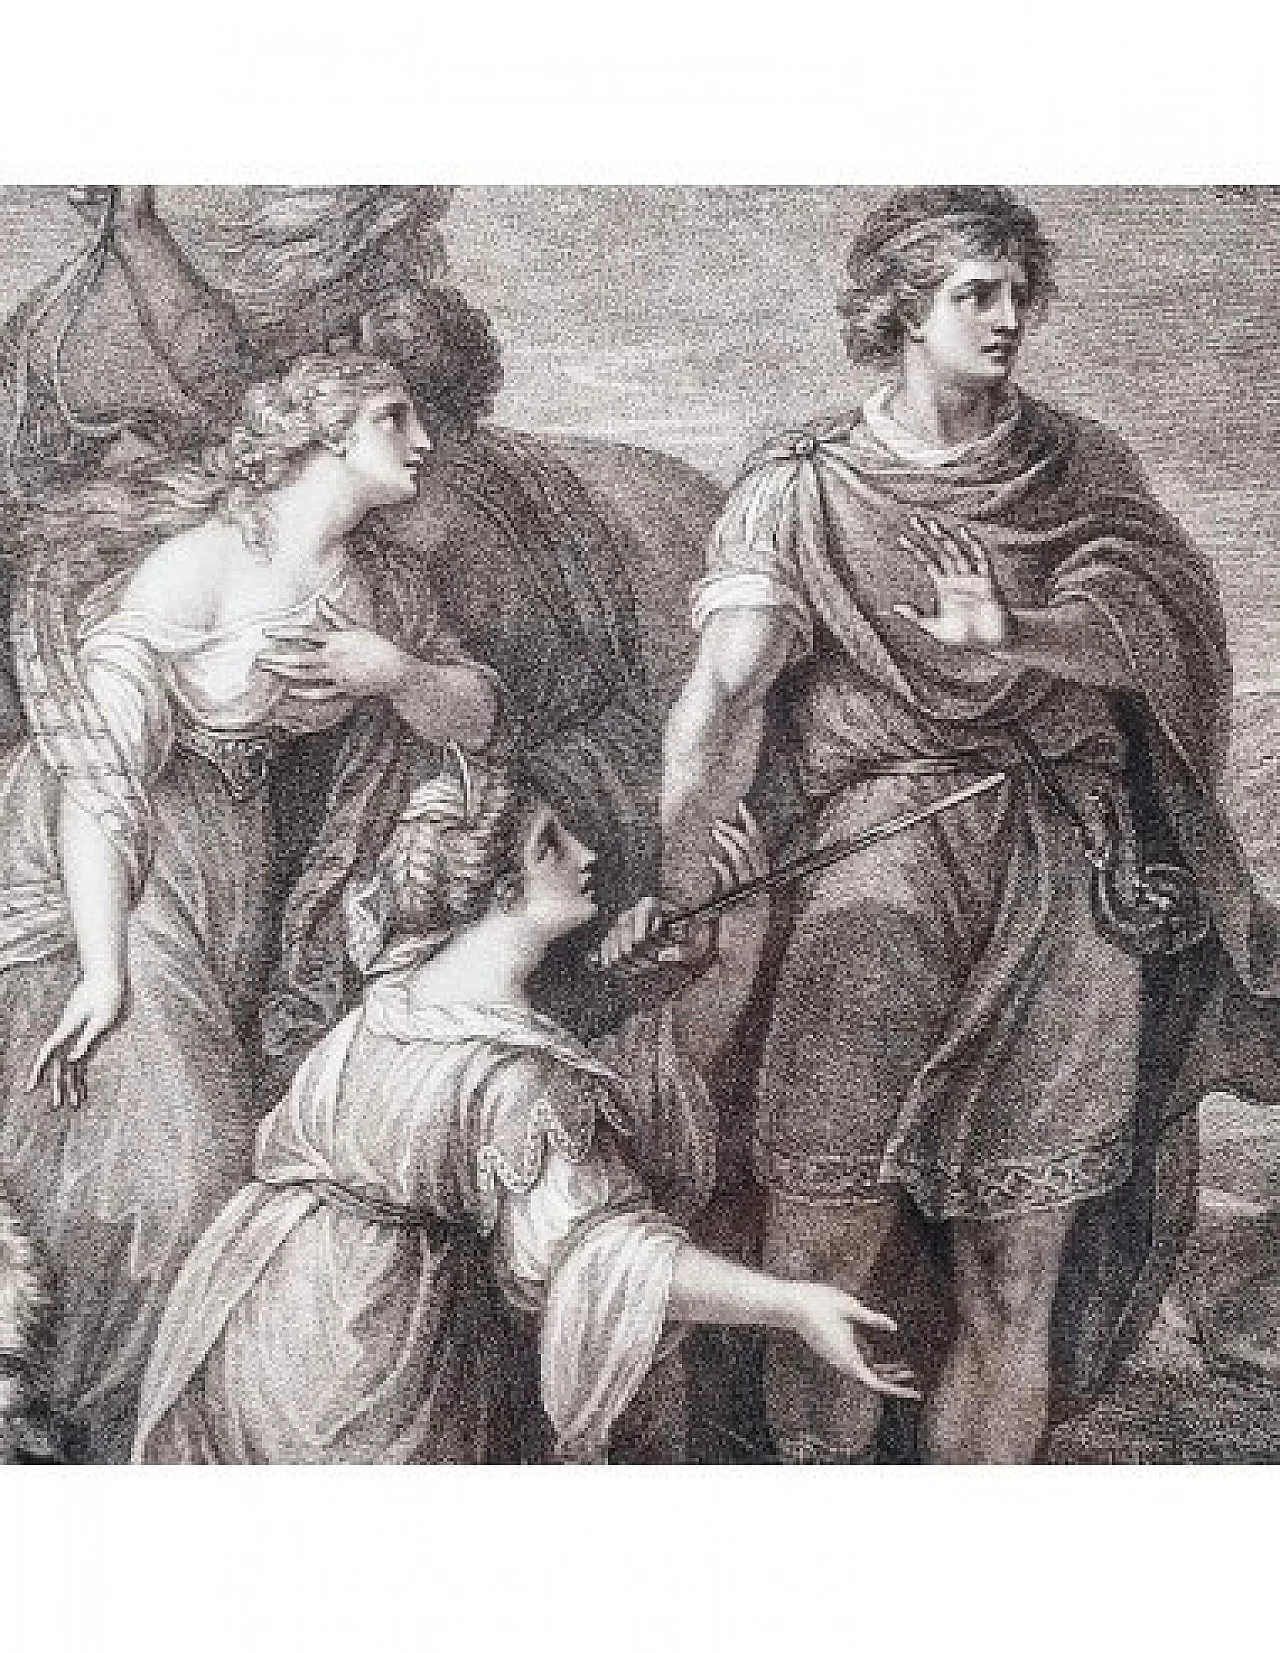 Palamone and Arcite, engraving by Francesco Bartolozzi, '700 5